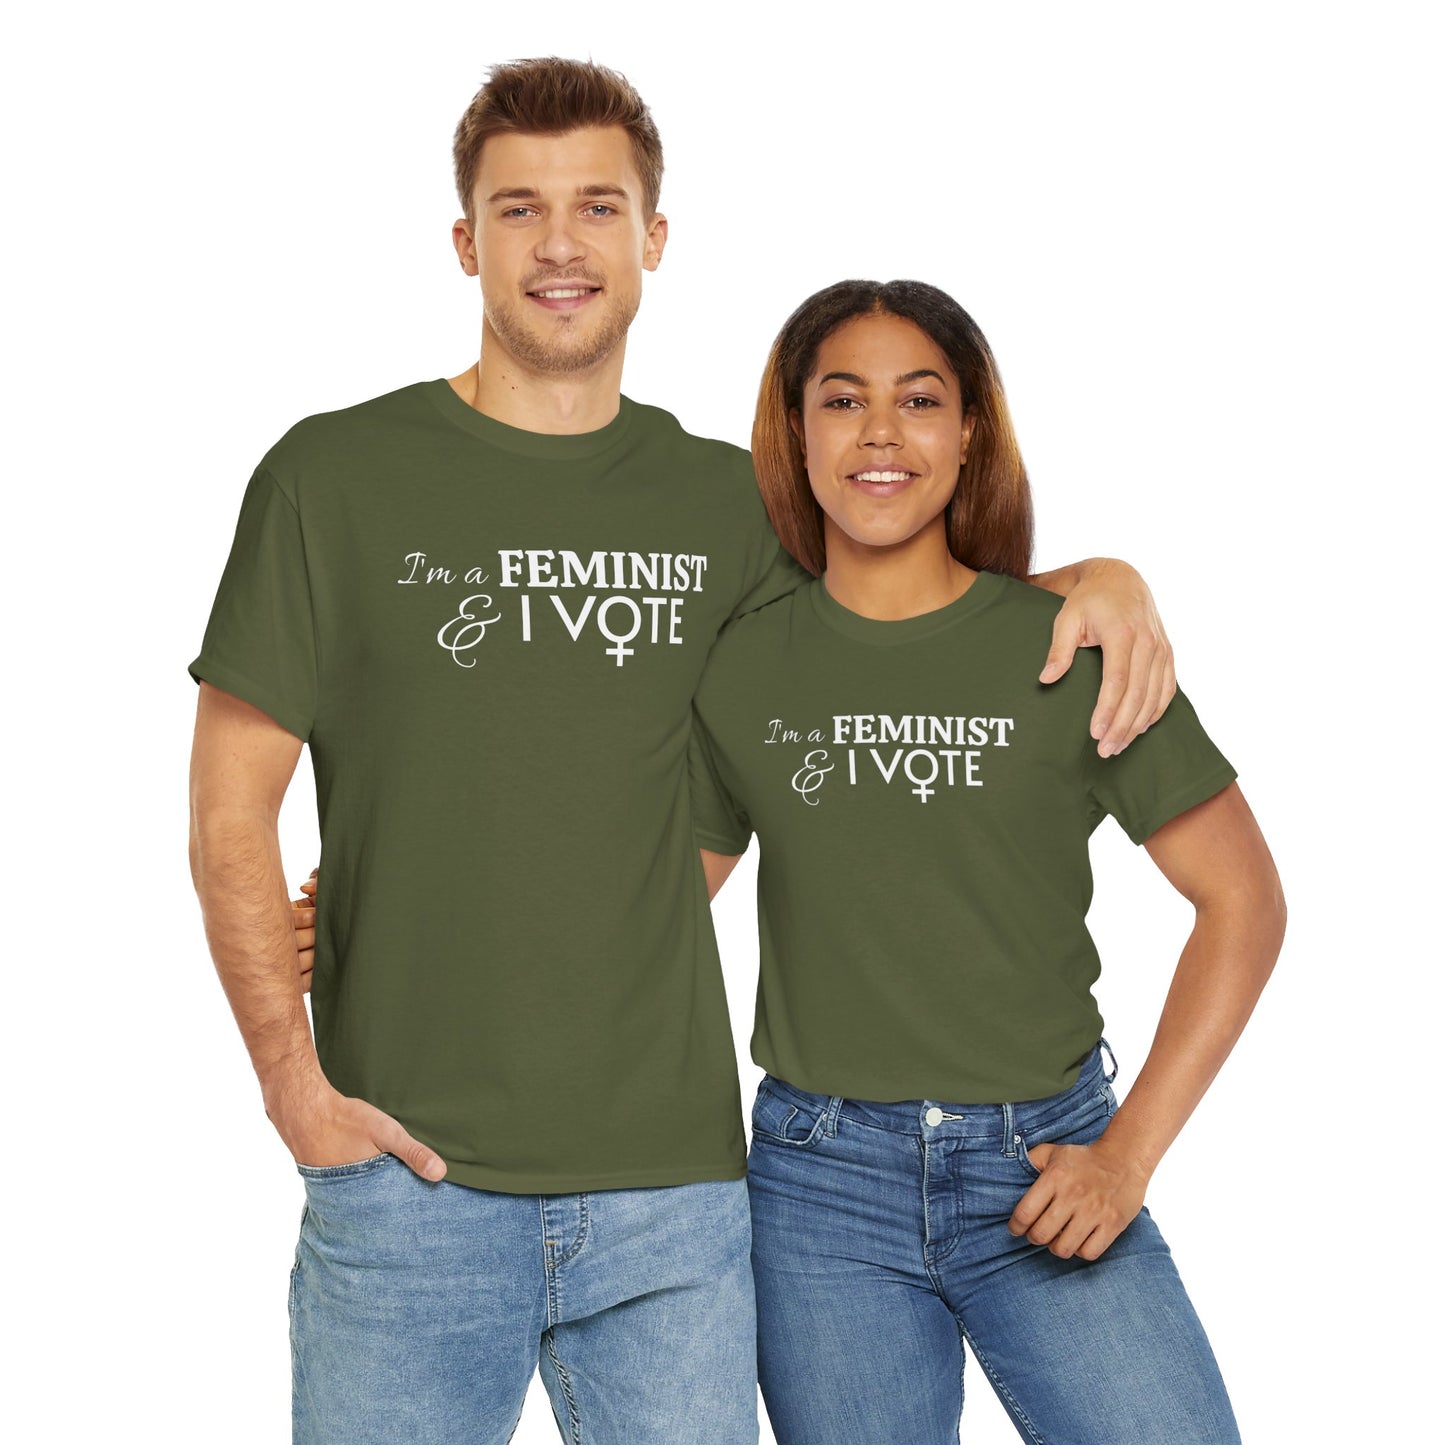 "I'm a FEMINIST & I vote" t-shirt